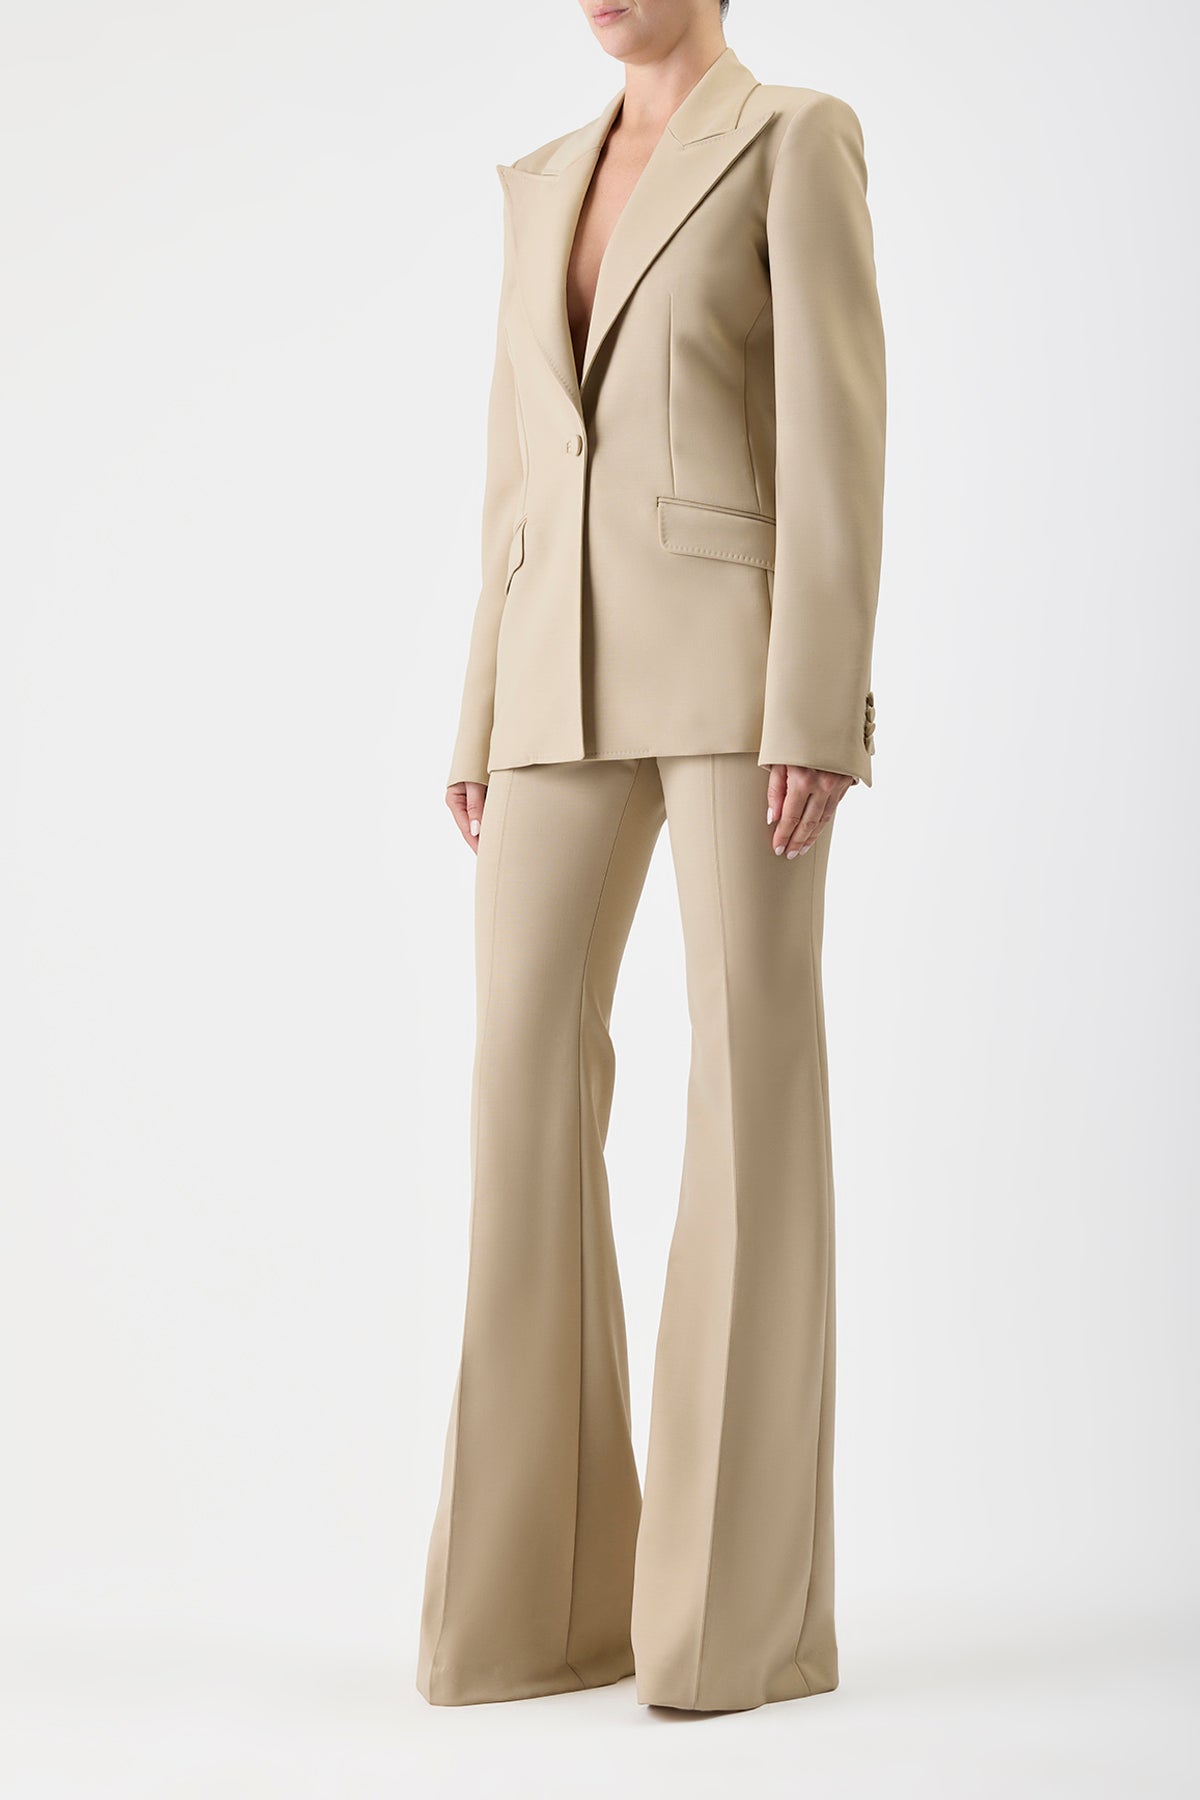 Leiva Blazer in Khaki Sportswear Wool